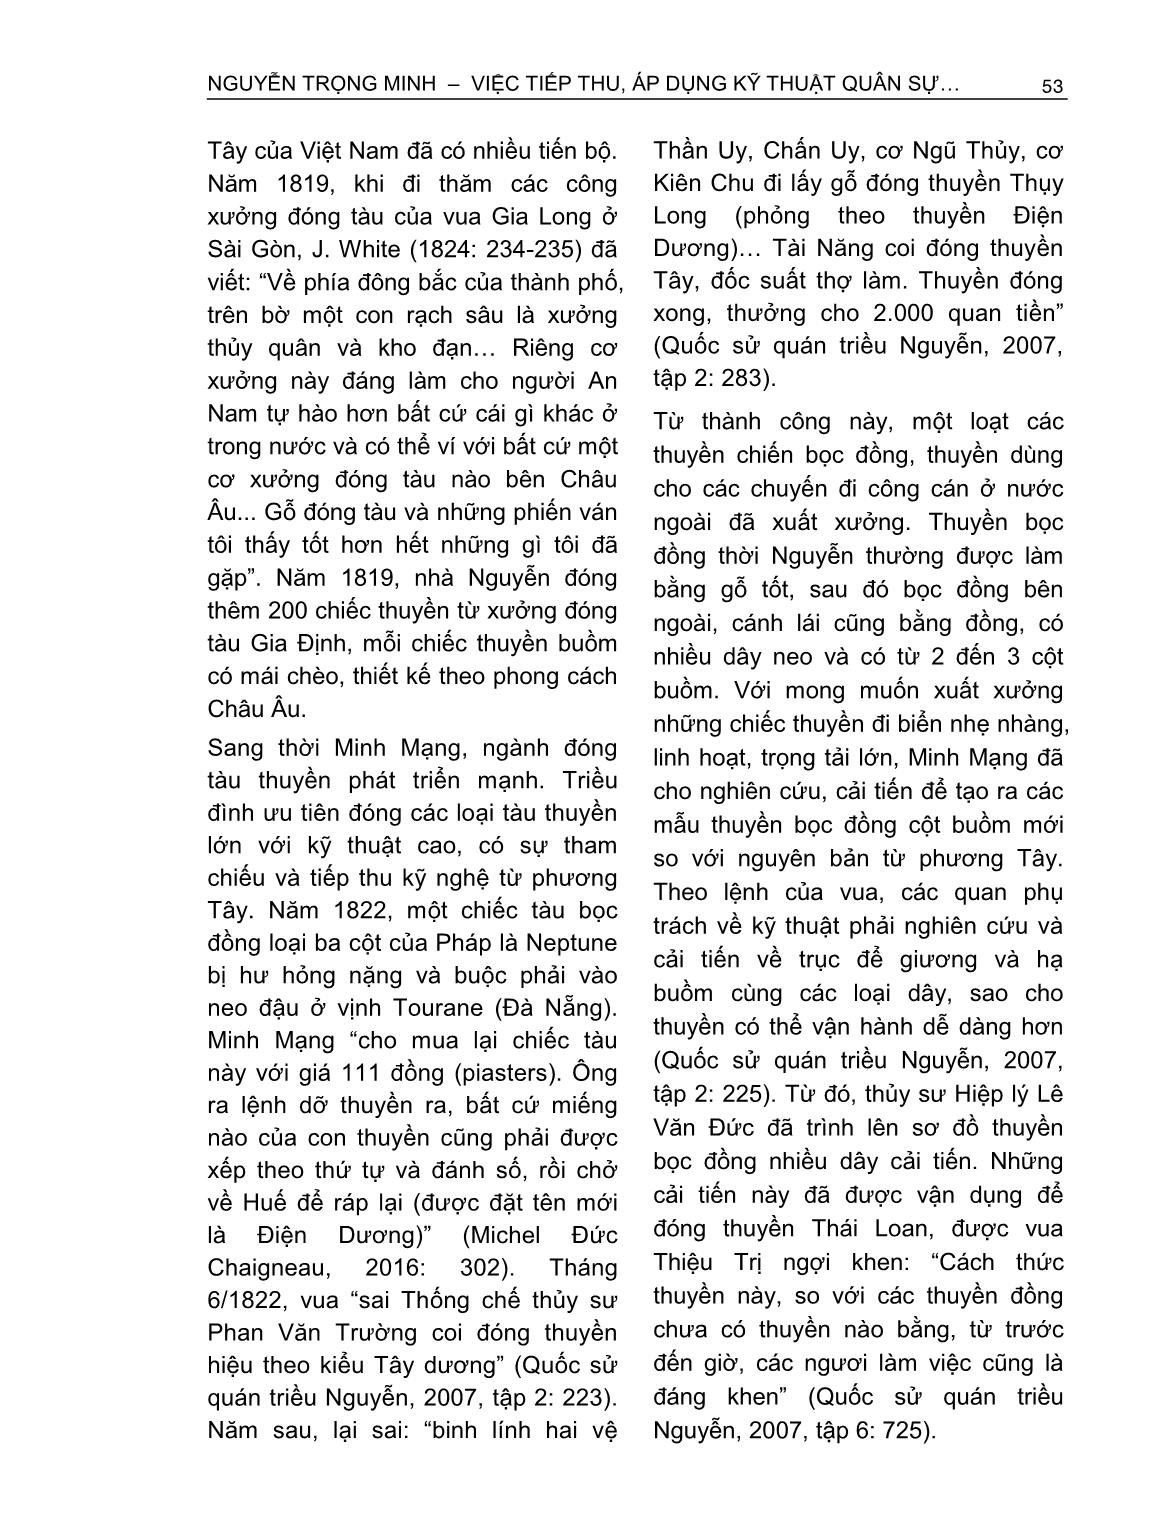 Việc tiếp thu, áp dụng kỹ thuật quân sự phương Tây của triều Nguyễn (1802-1858) trang 4